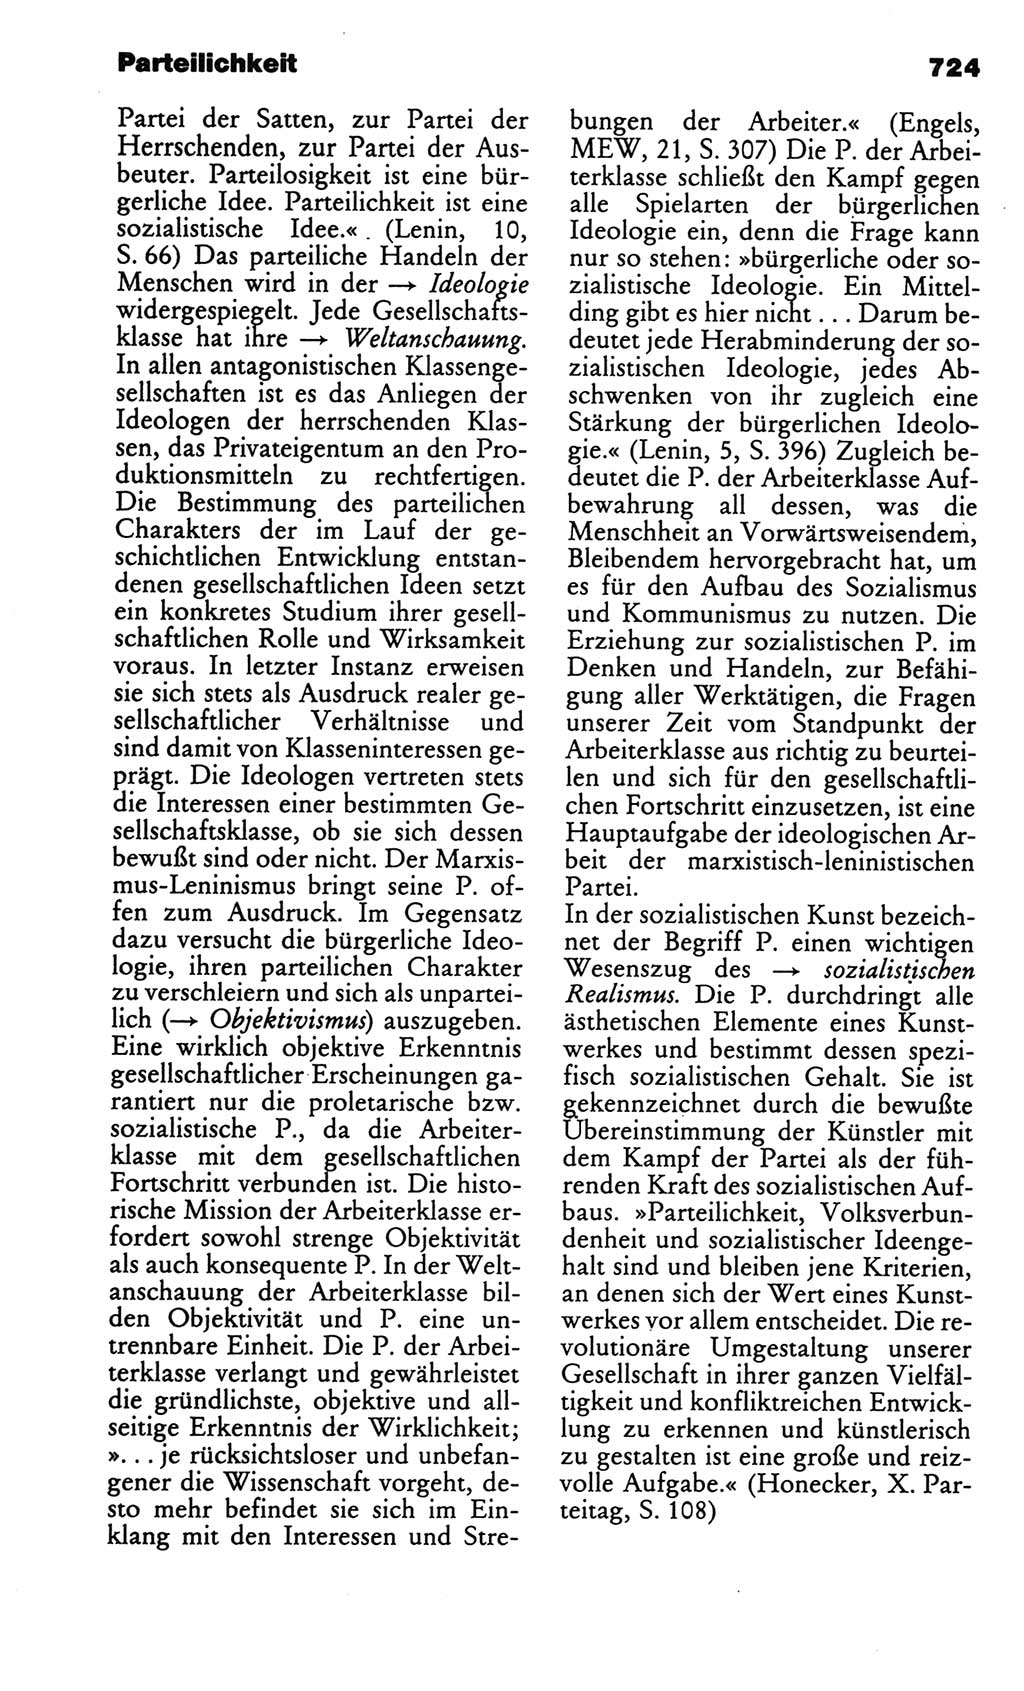 Kleines politisches Wörterbuch [Deutsche Demokratische Republik (DDR)] 1986, Seite 724 (Kl. pol. Wb. DDR 1986, S. 724)